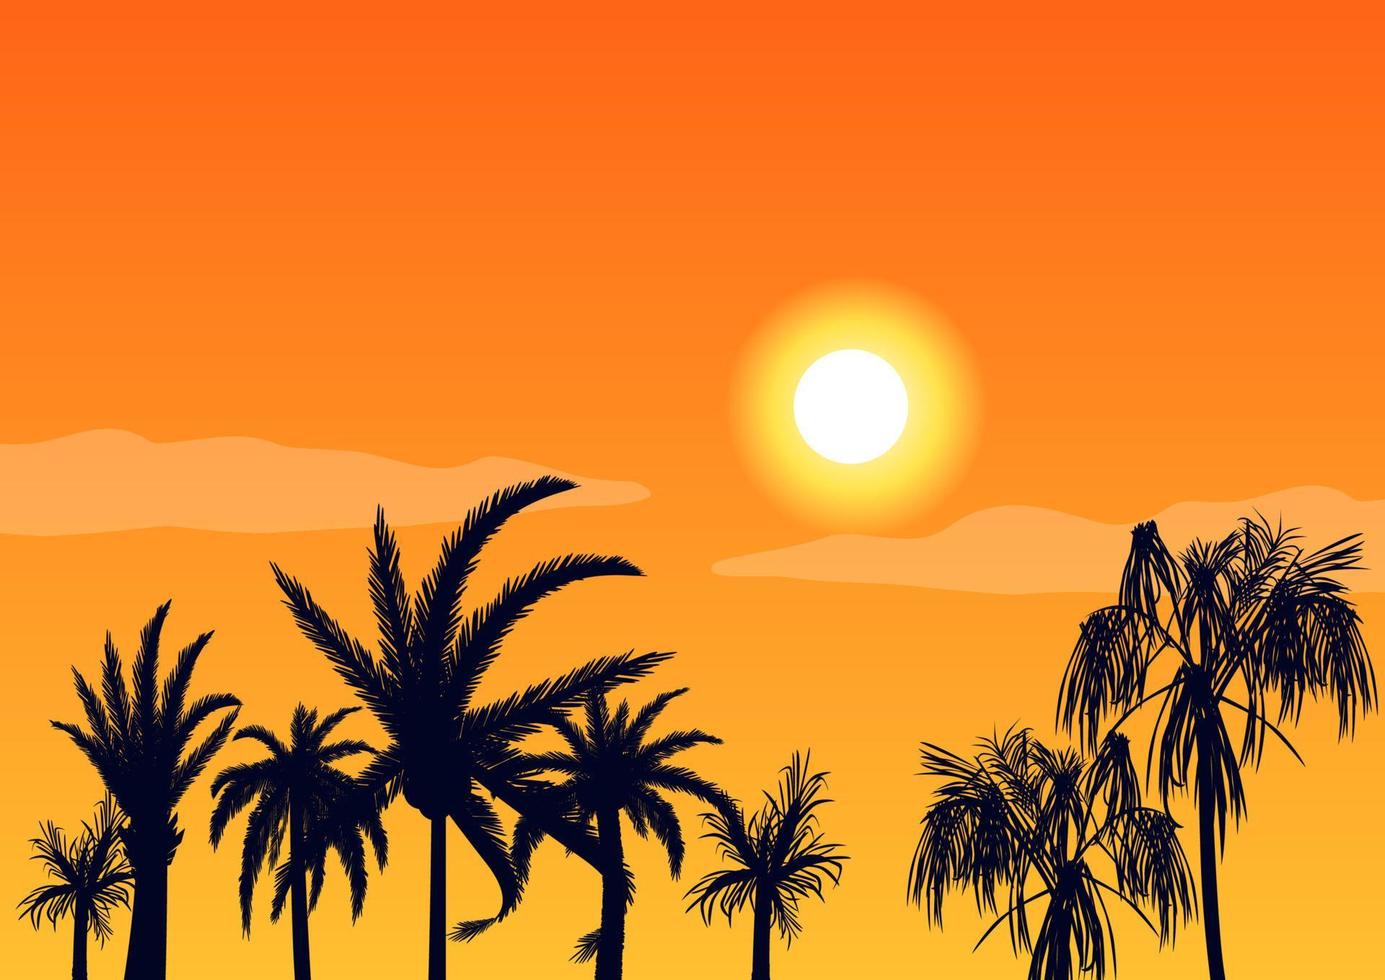 noite quente do sol e palmeiras de silhuetas. praia tropical no fundo laranja brilhante pôr do sol belo paraíso costa resort lagoa romântica com vetor exótico.